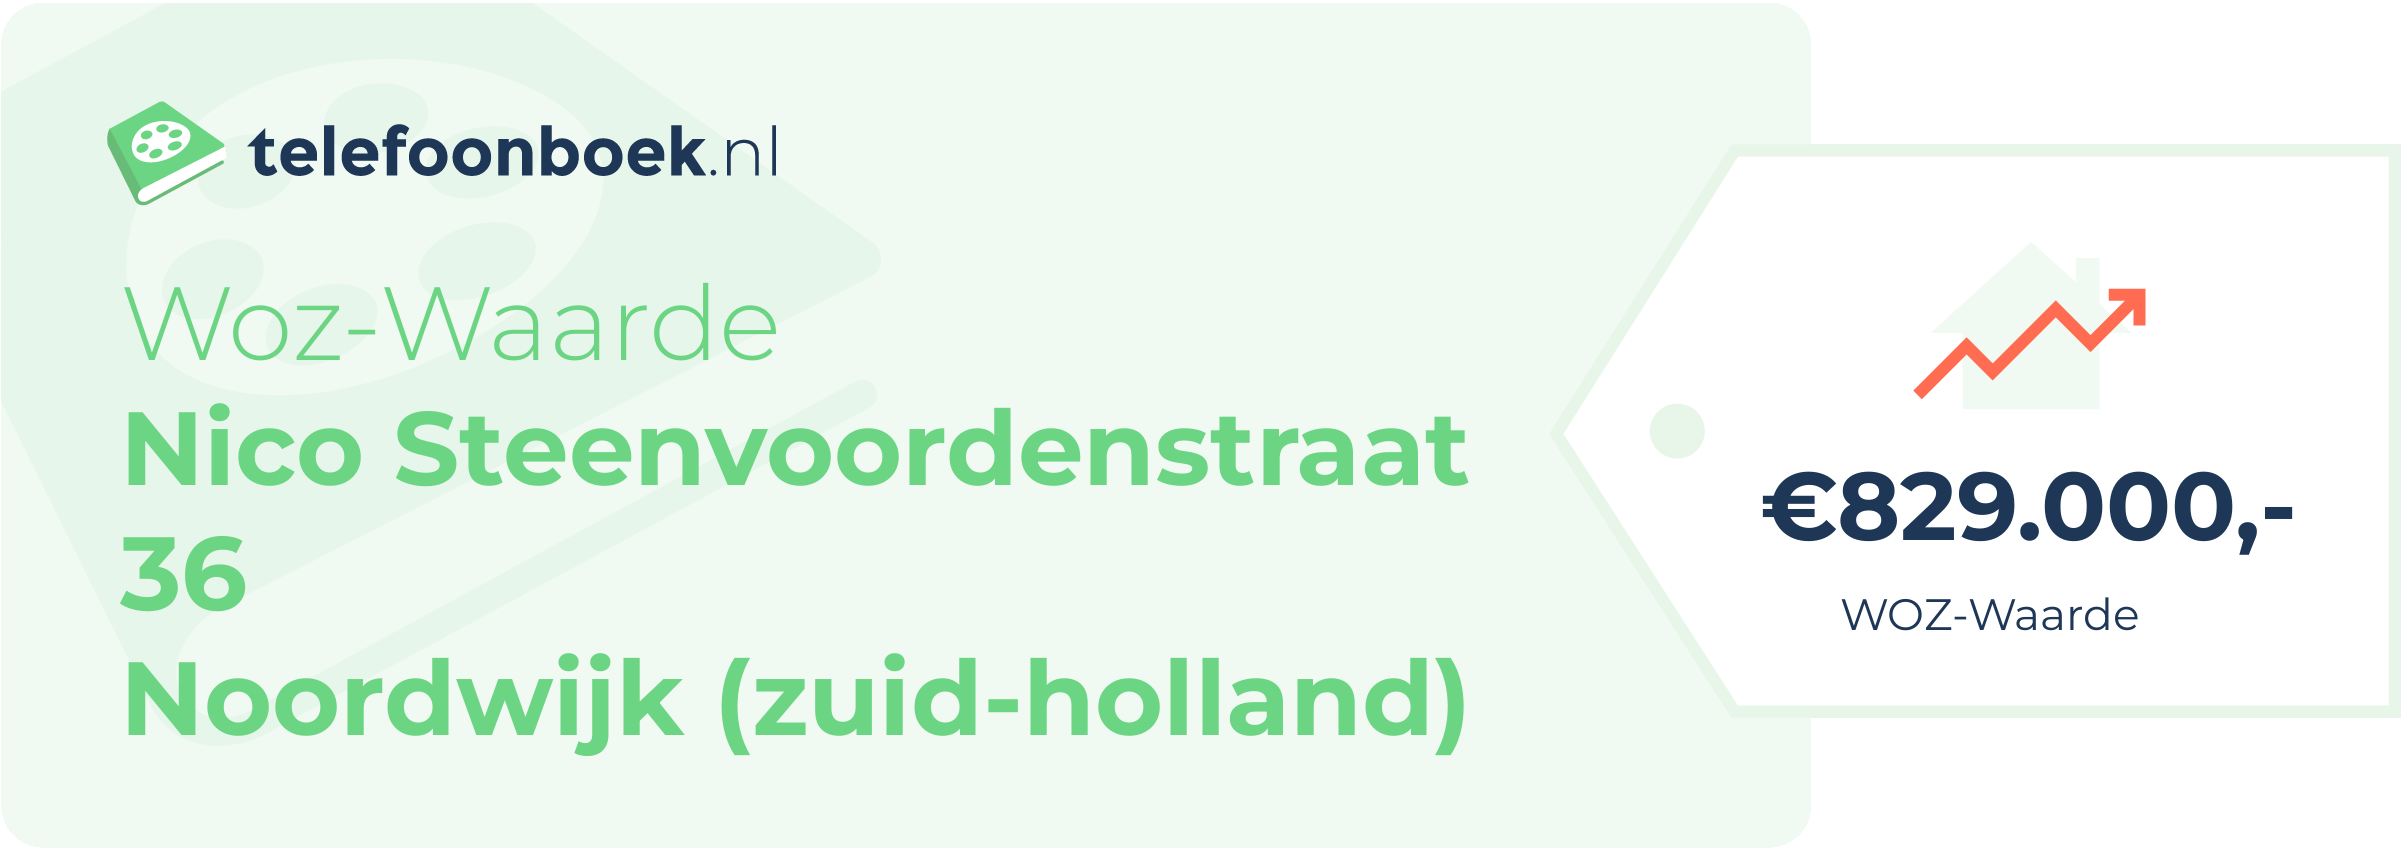 WOZ-waarde Nico Steenvoordenstraat 36 Noordwijk (Zuid-Holland)